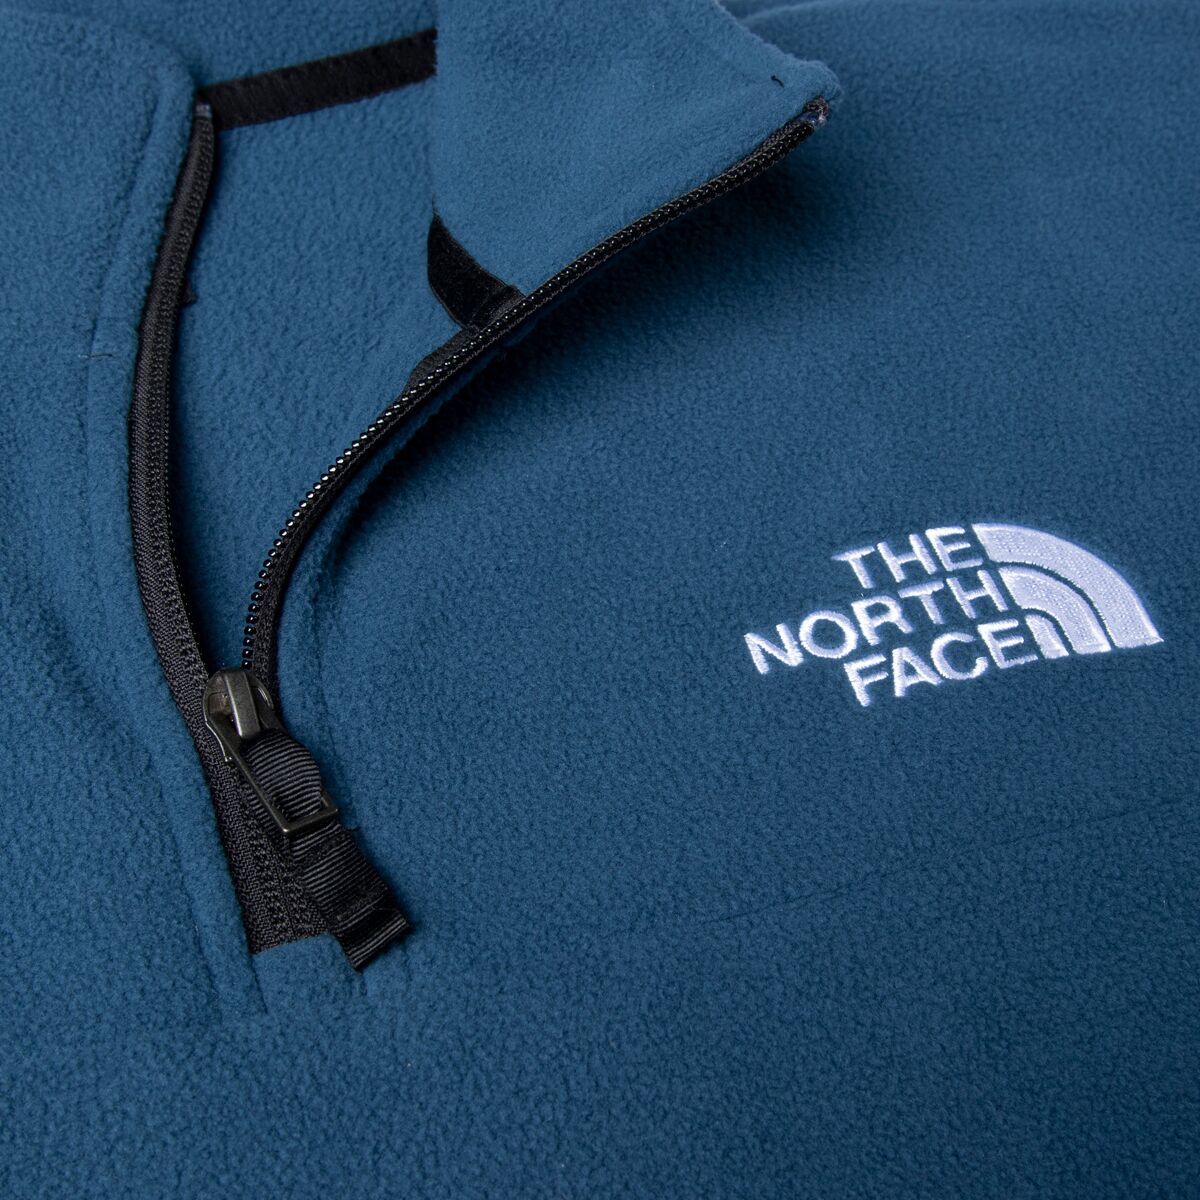 The North Face Anchor Fleece Pullover - Men's - Men